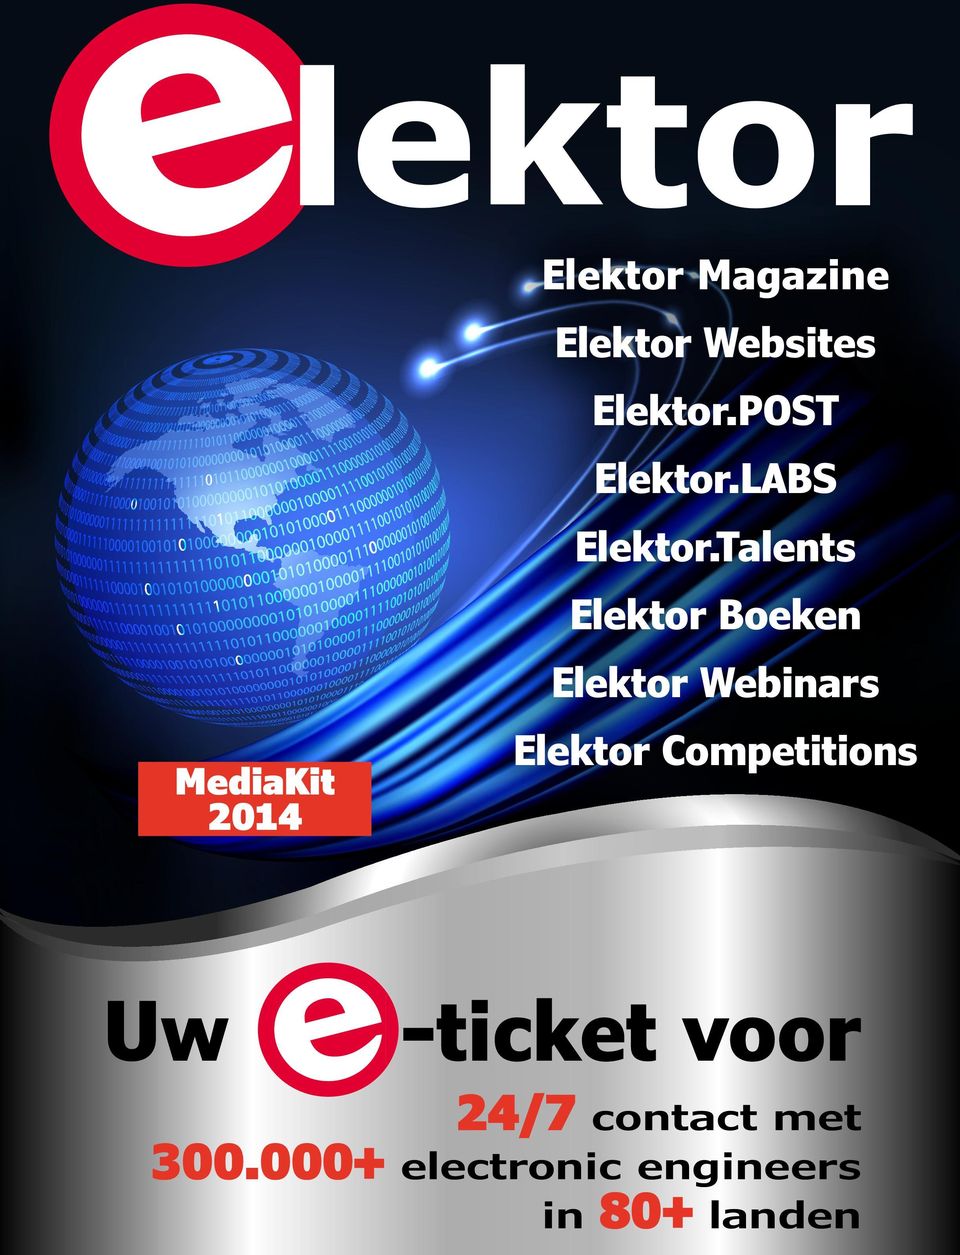 Talents Elektor Boeken Elektor Webinars Elektor